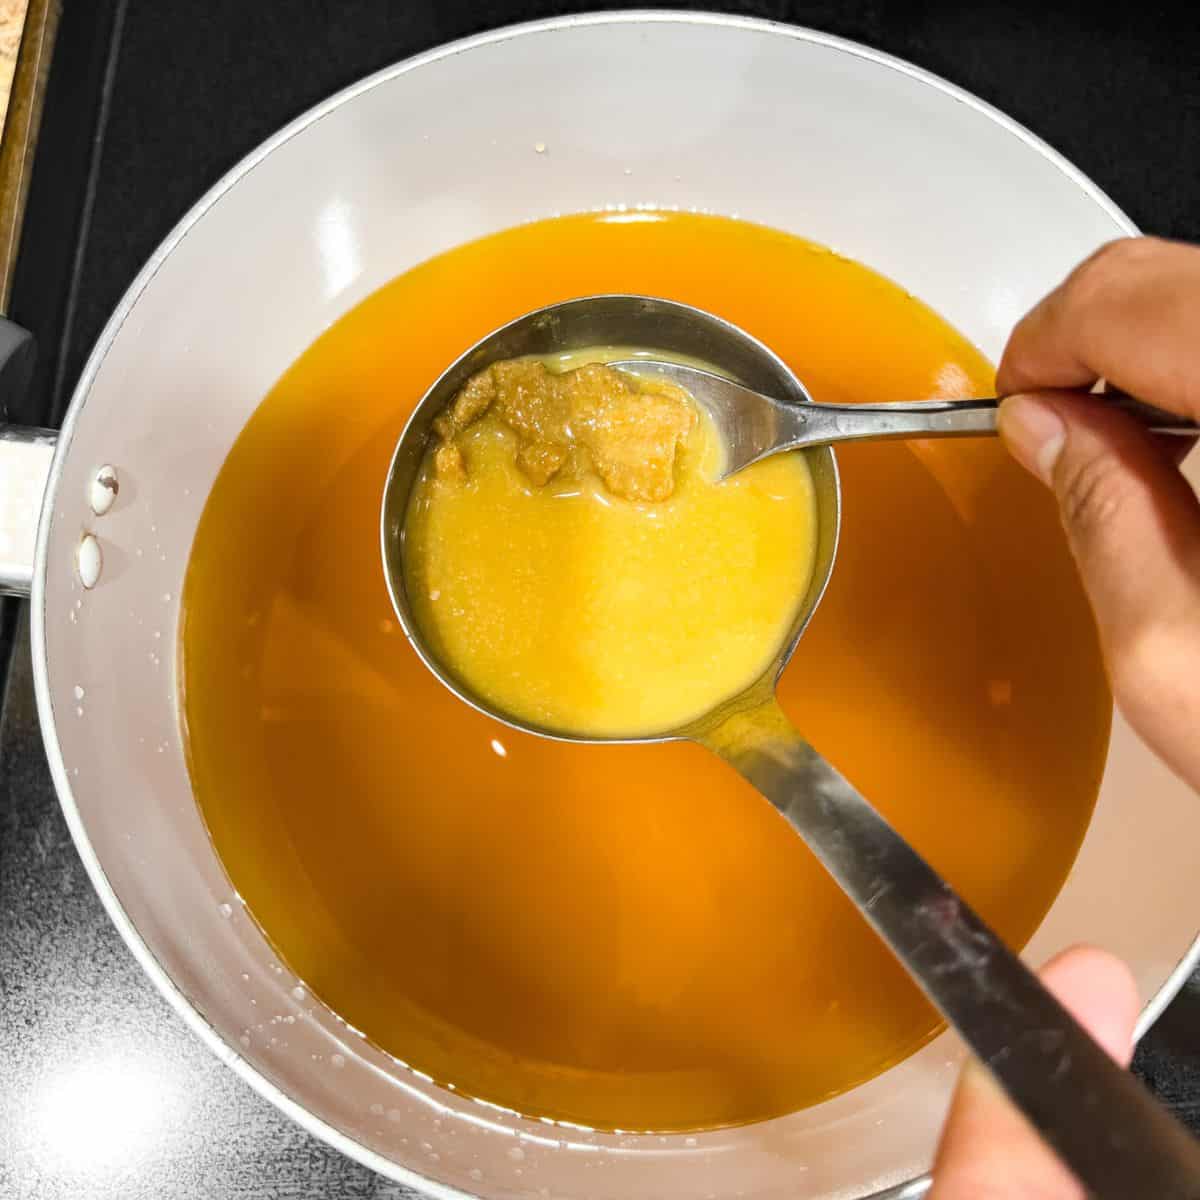 Dissolving soybean paste to make a soup.